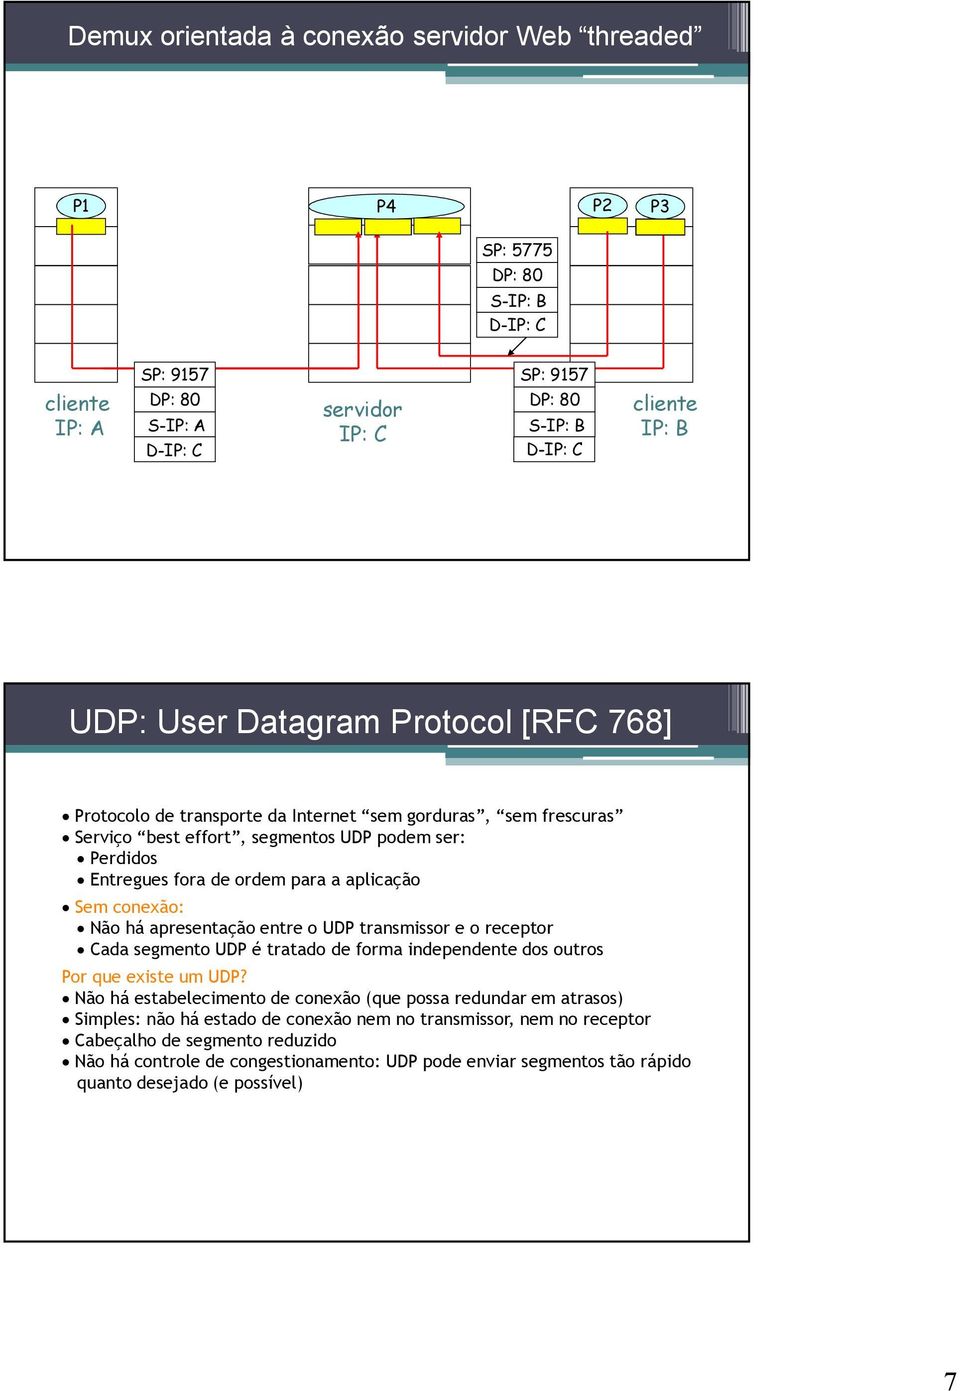 Sem conexão: Não há apresentação entre o UDP transmissor e o receptor Cada segmento UDP é tratado de forma independente dos outros Por que existe um UDP?